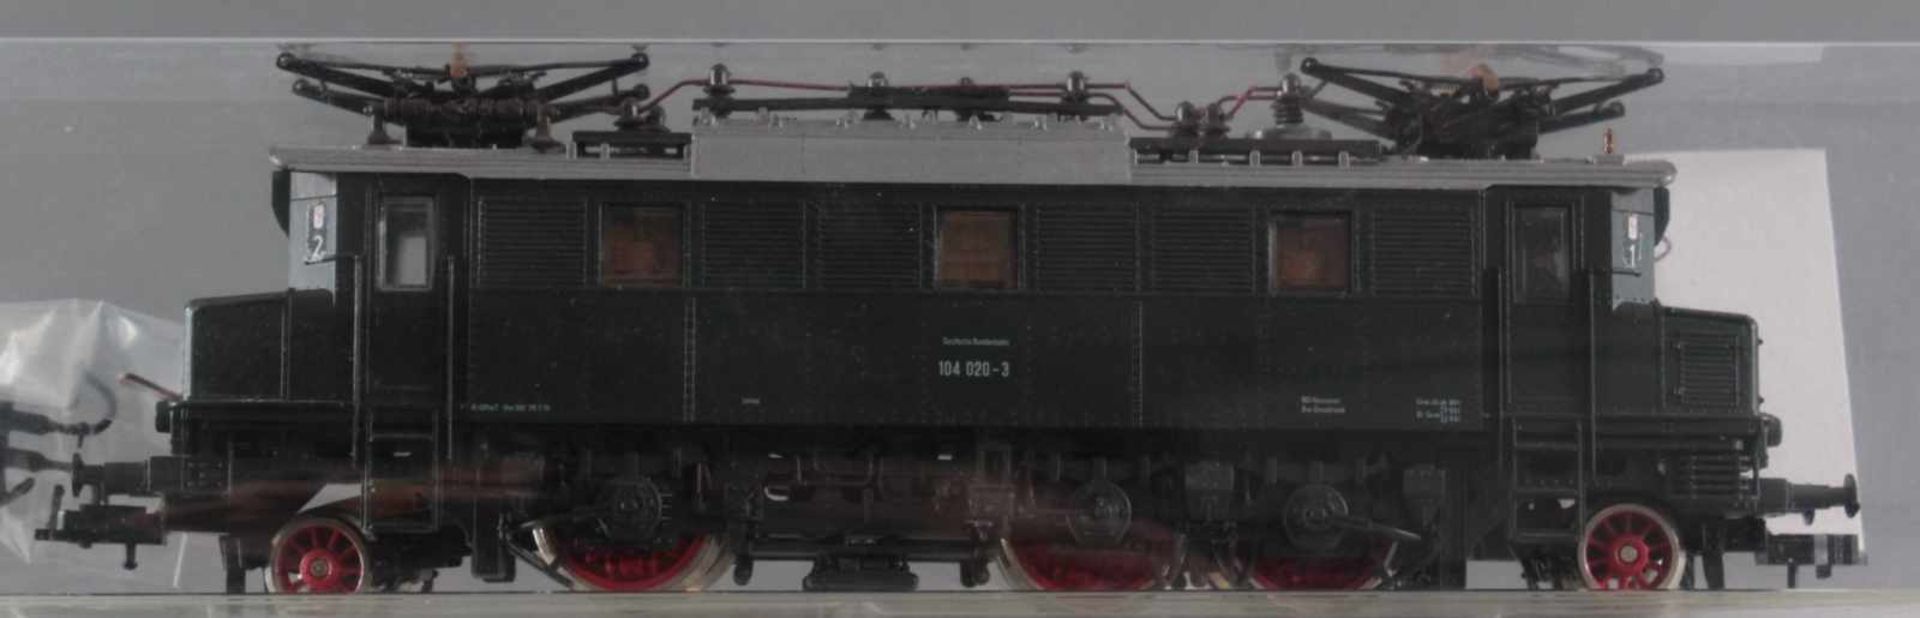 Roco H0 Elektrolok 104 020-3 mit 8 Fleischmann GüterwaggonsModellnummer der Waggons 5425 , 5427, - Image 2 of 2